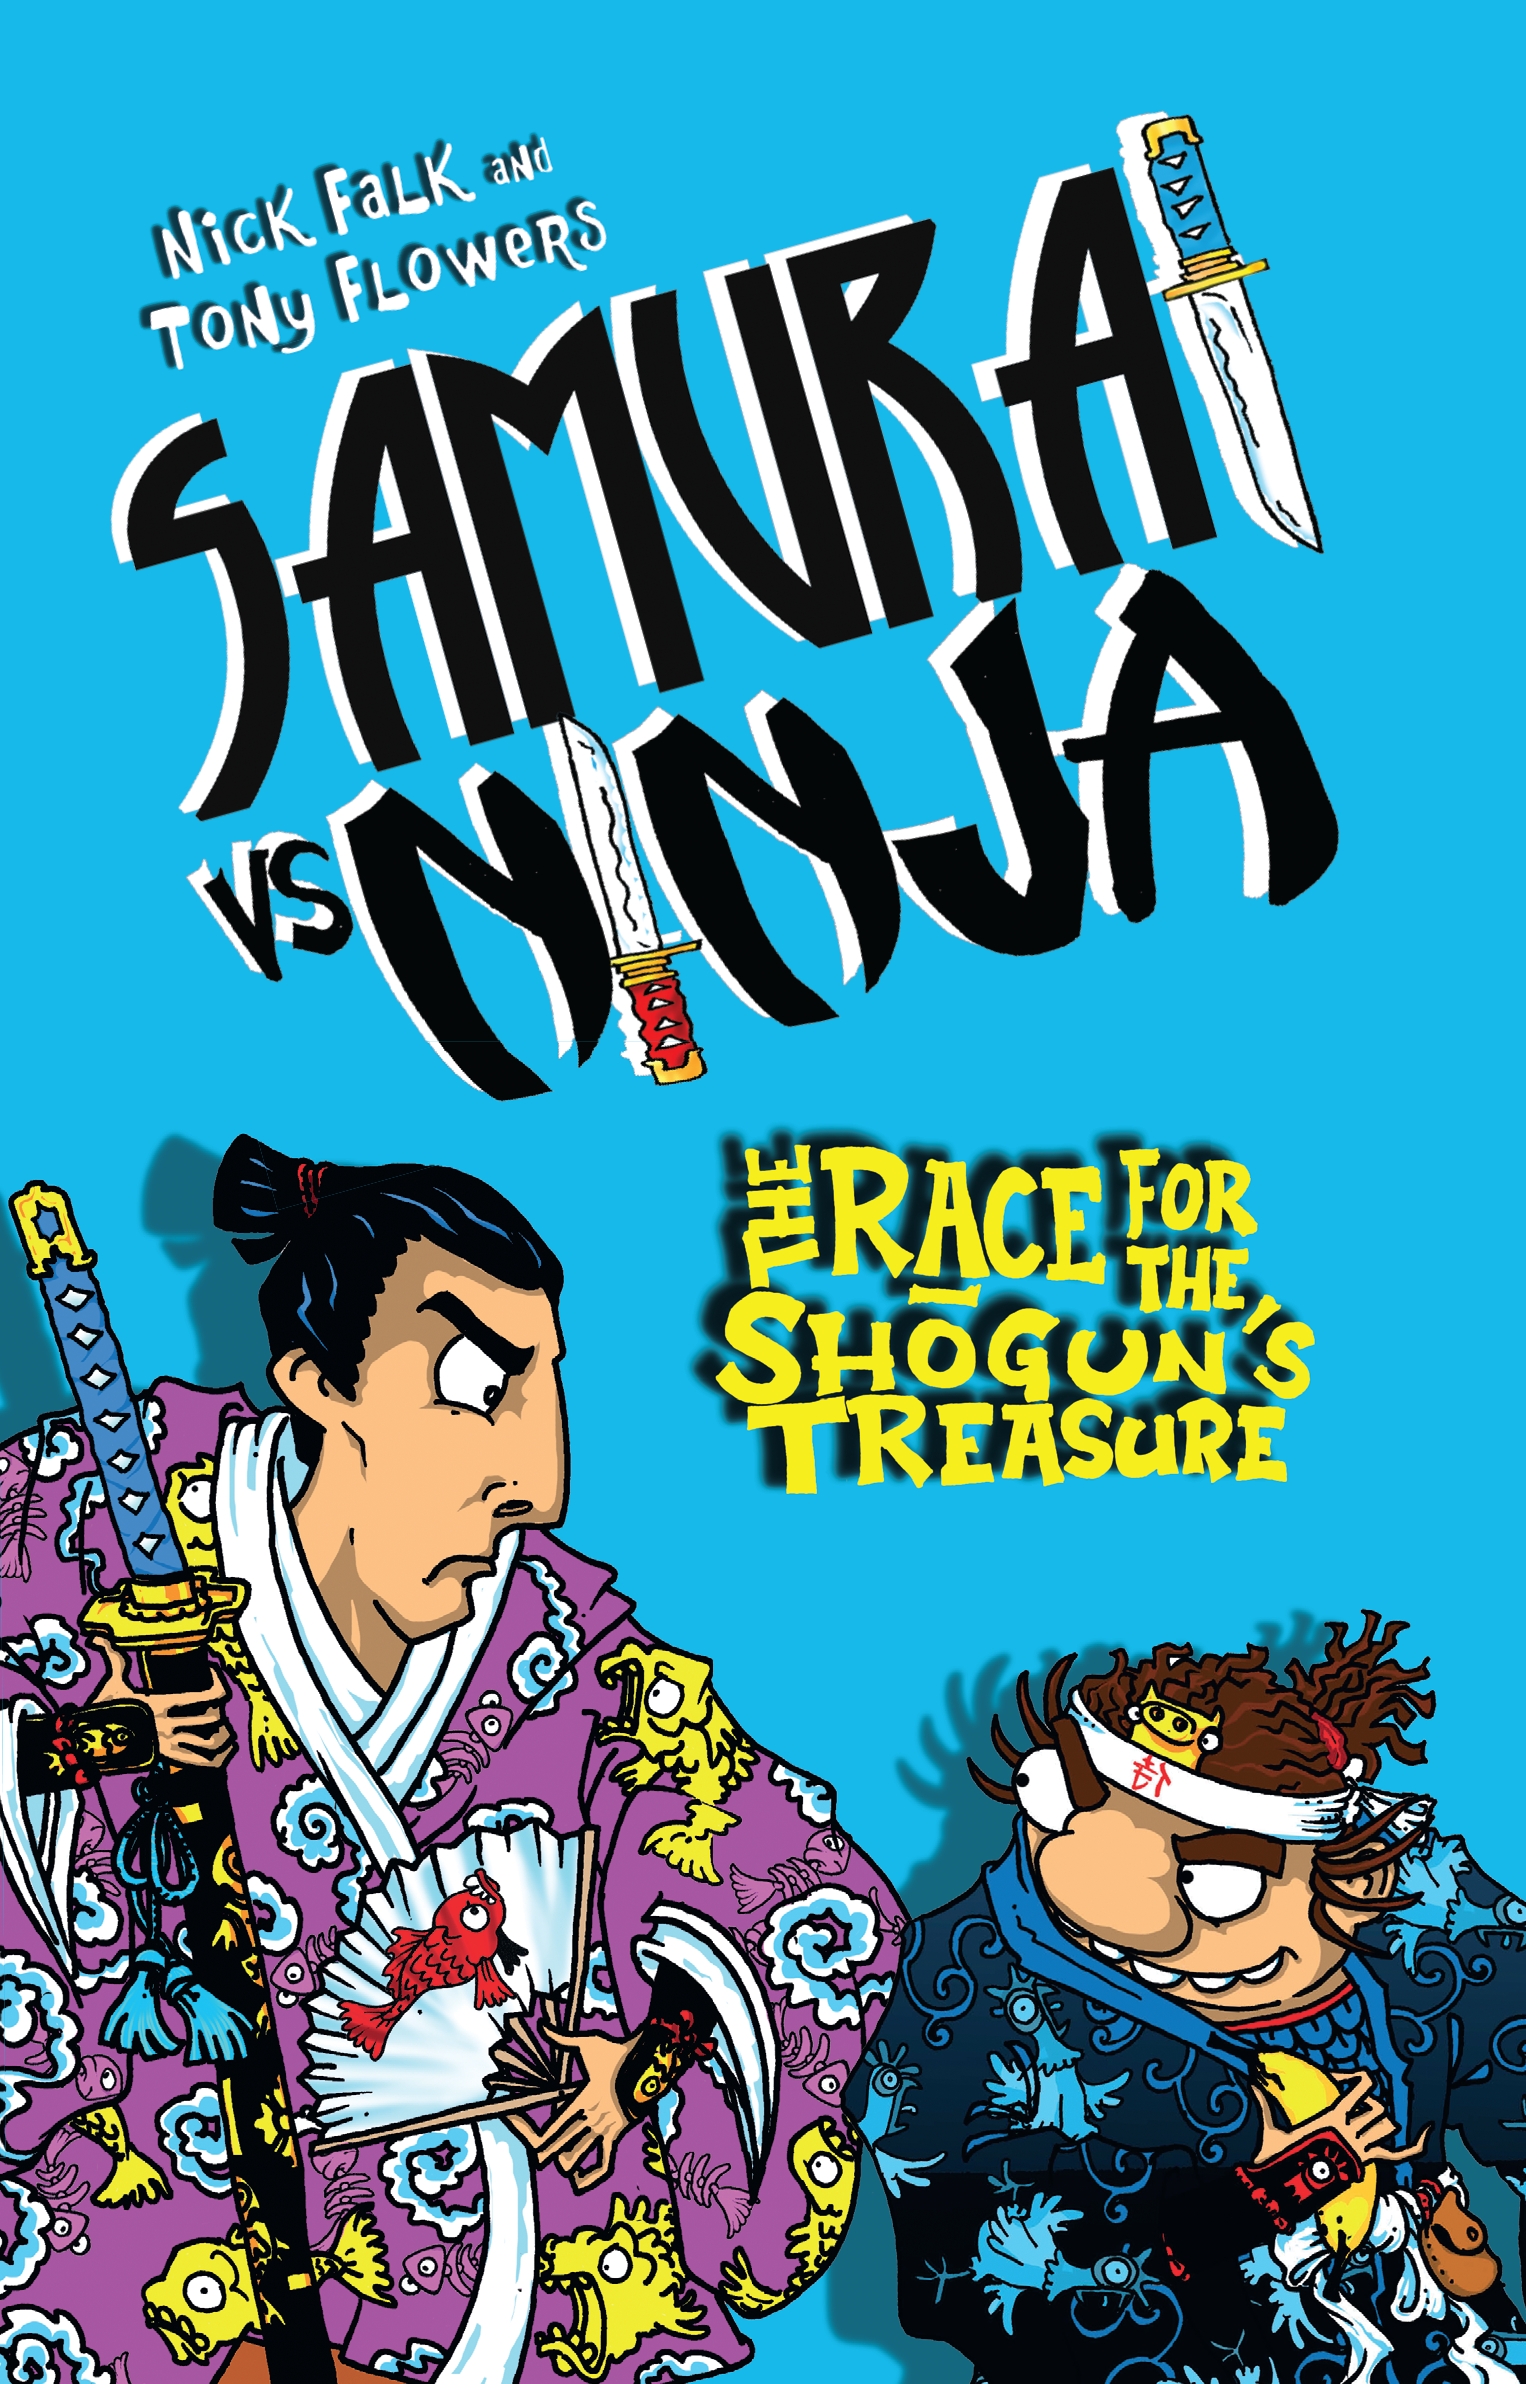 shinobi vs ninja